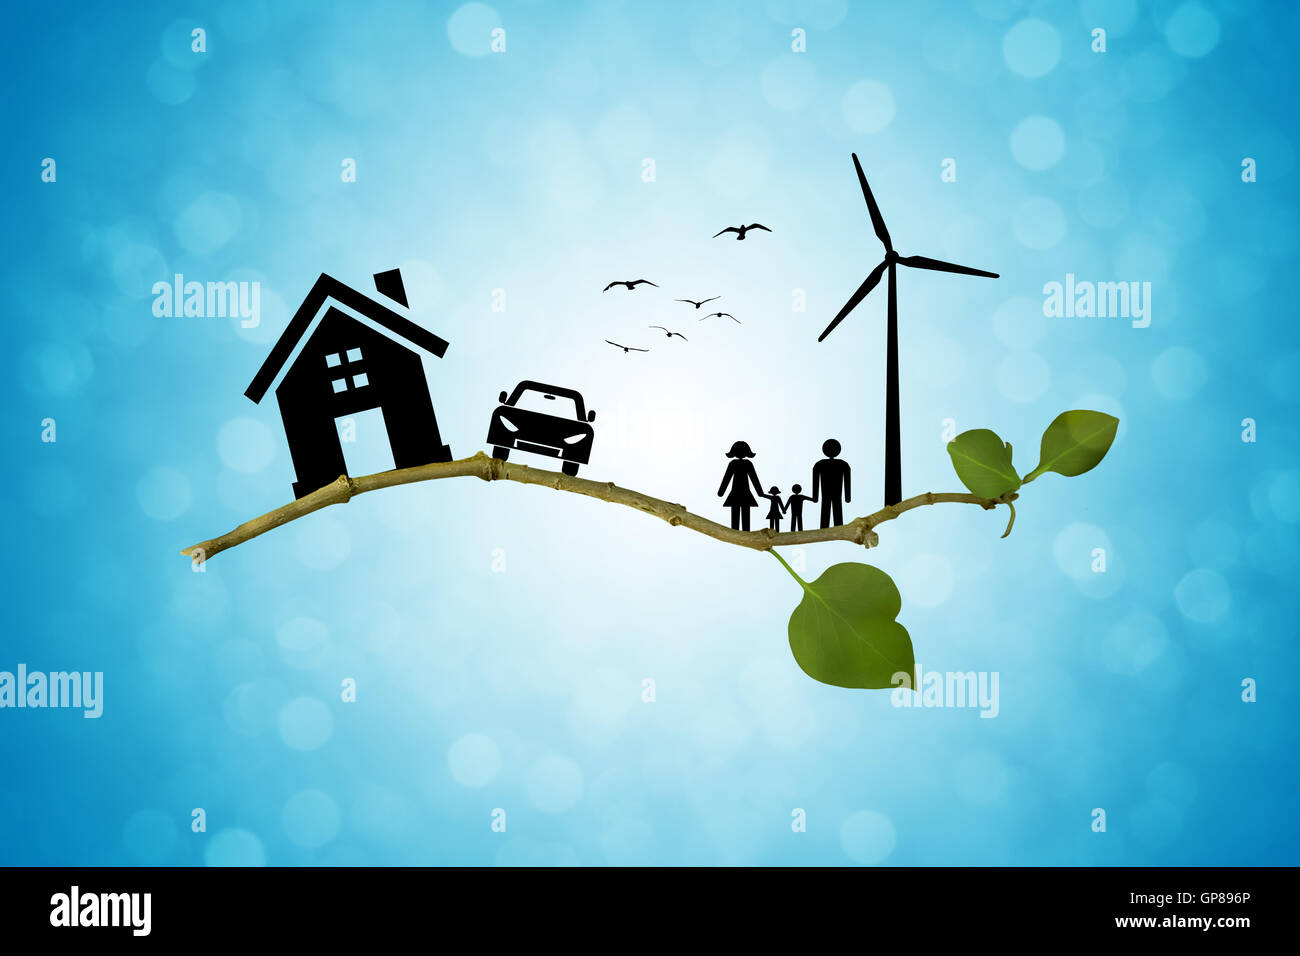 Energía verde ambiental concepto. Silueta de familia feliz, la casa, el coche y el molino de viento en la rama de un árbol Foto de stock